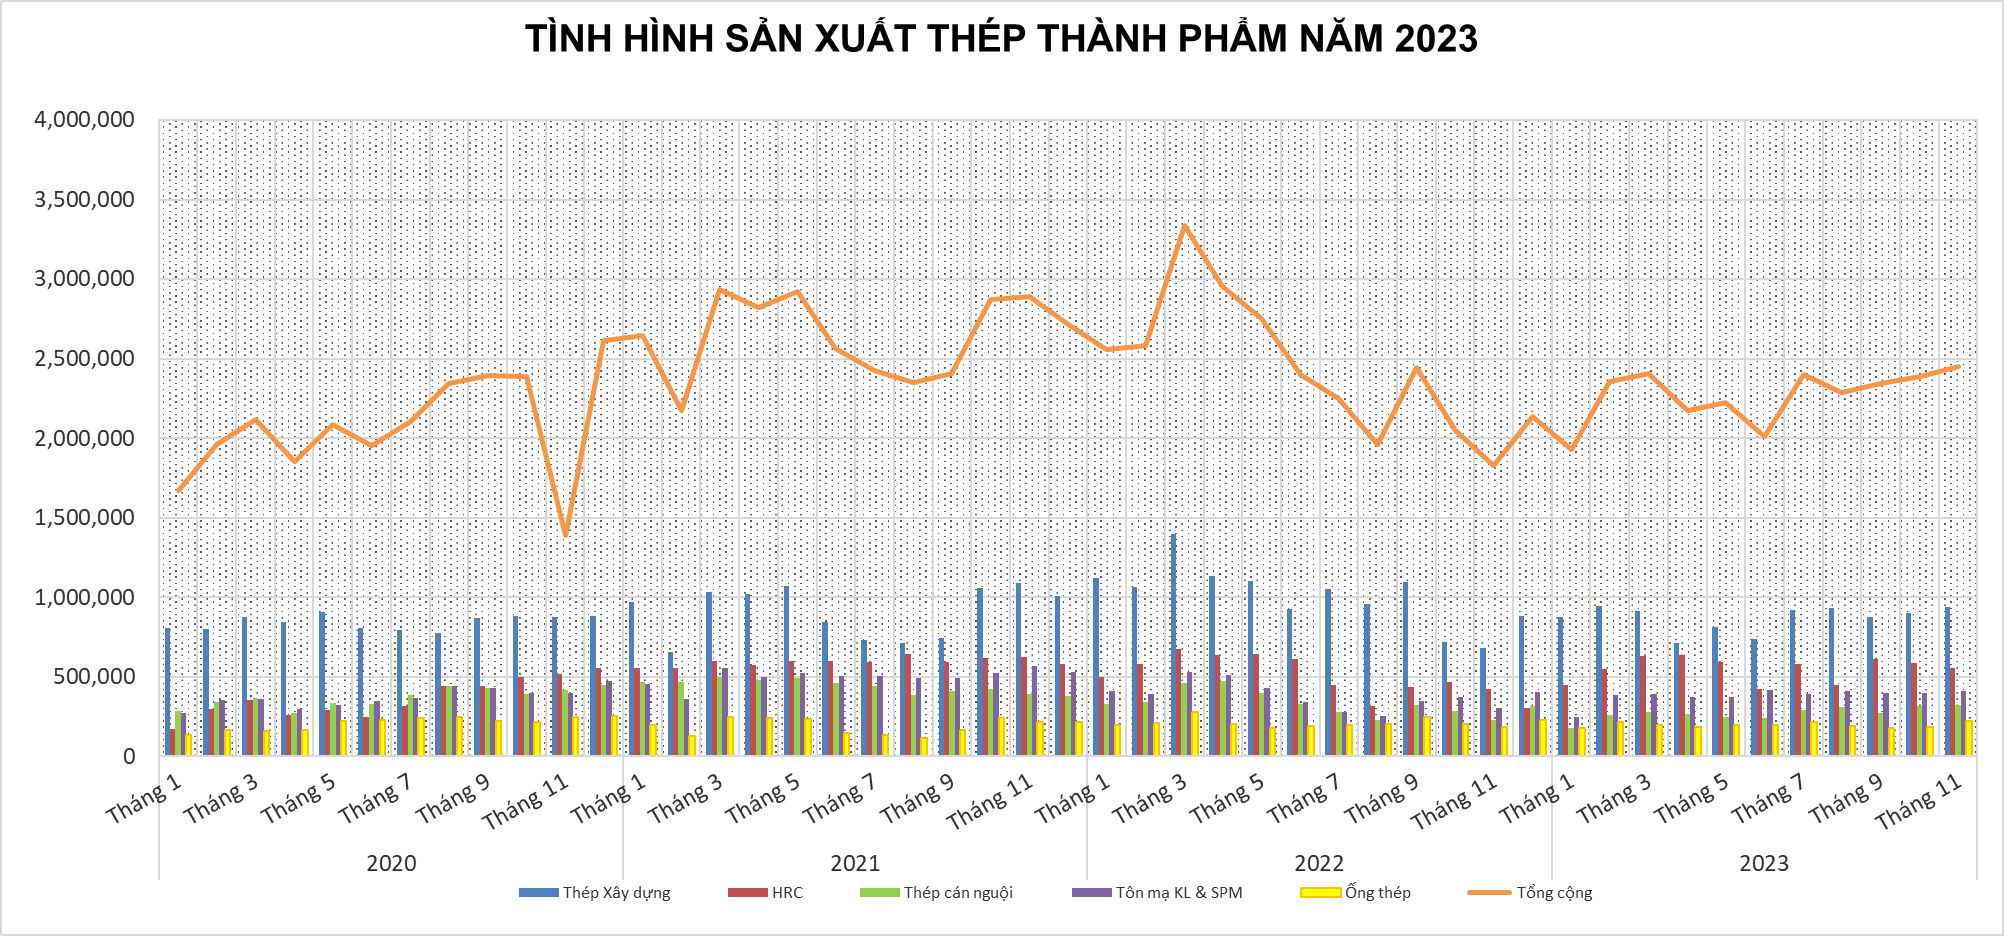 Tình hình thị trường thép Việt Nam tháng 11/2023 và 11 tháng đầu năm 2023